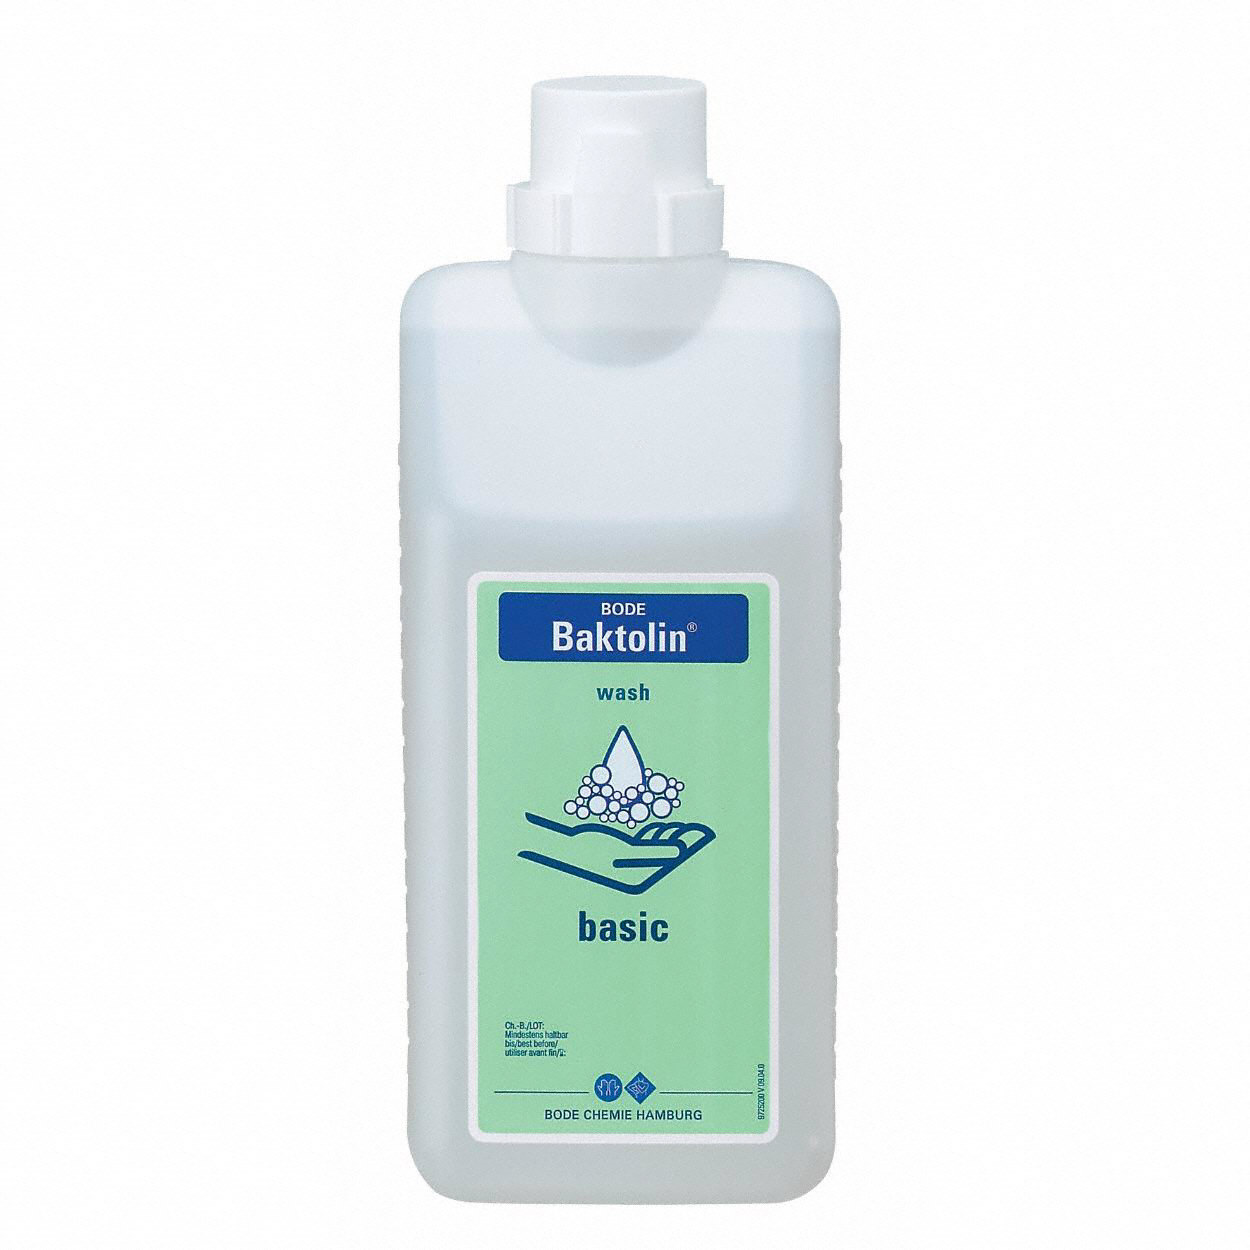 Baktolin® basic / pure, 500 ml - Standardní mycí emulze na umytí rukou a těla